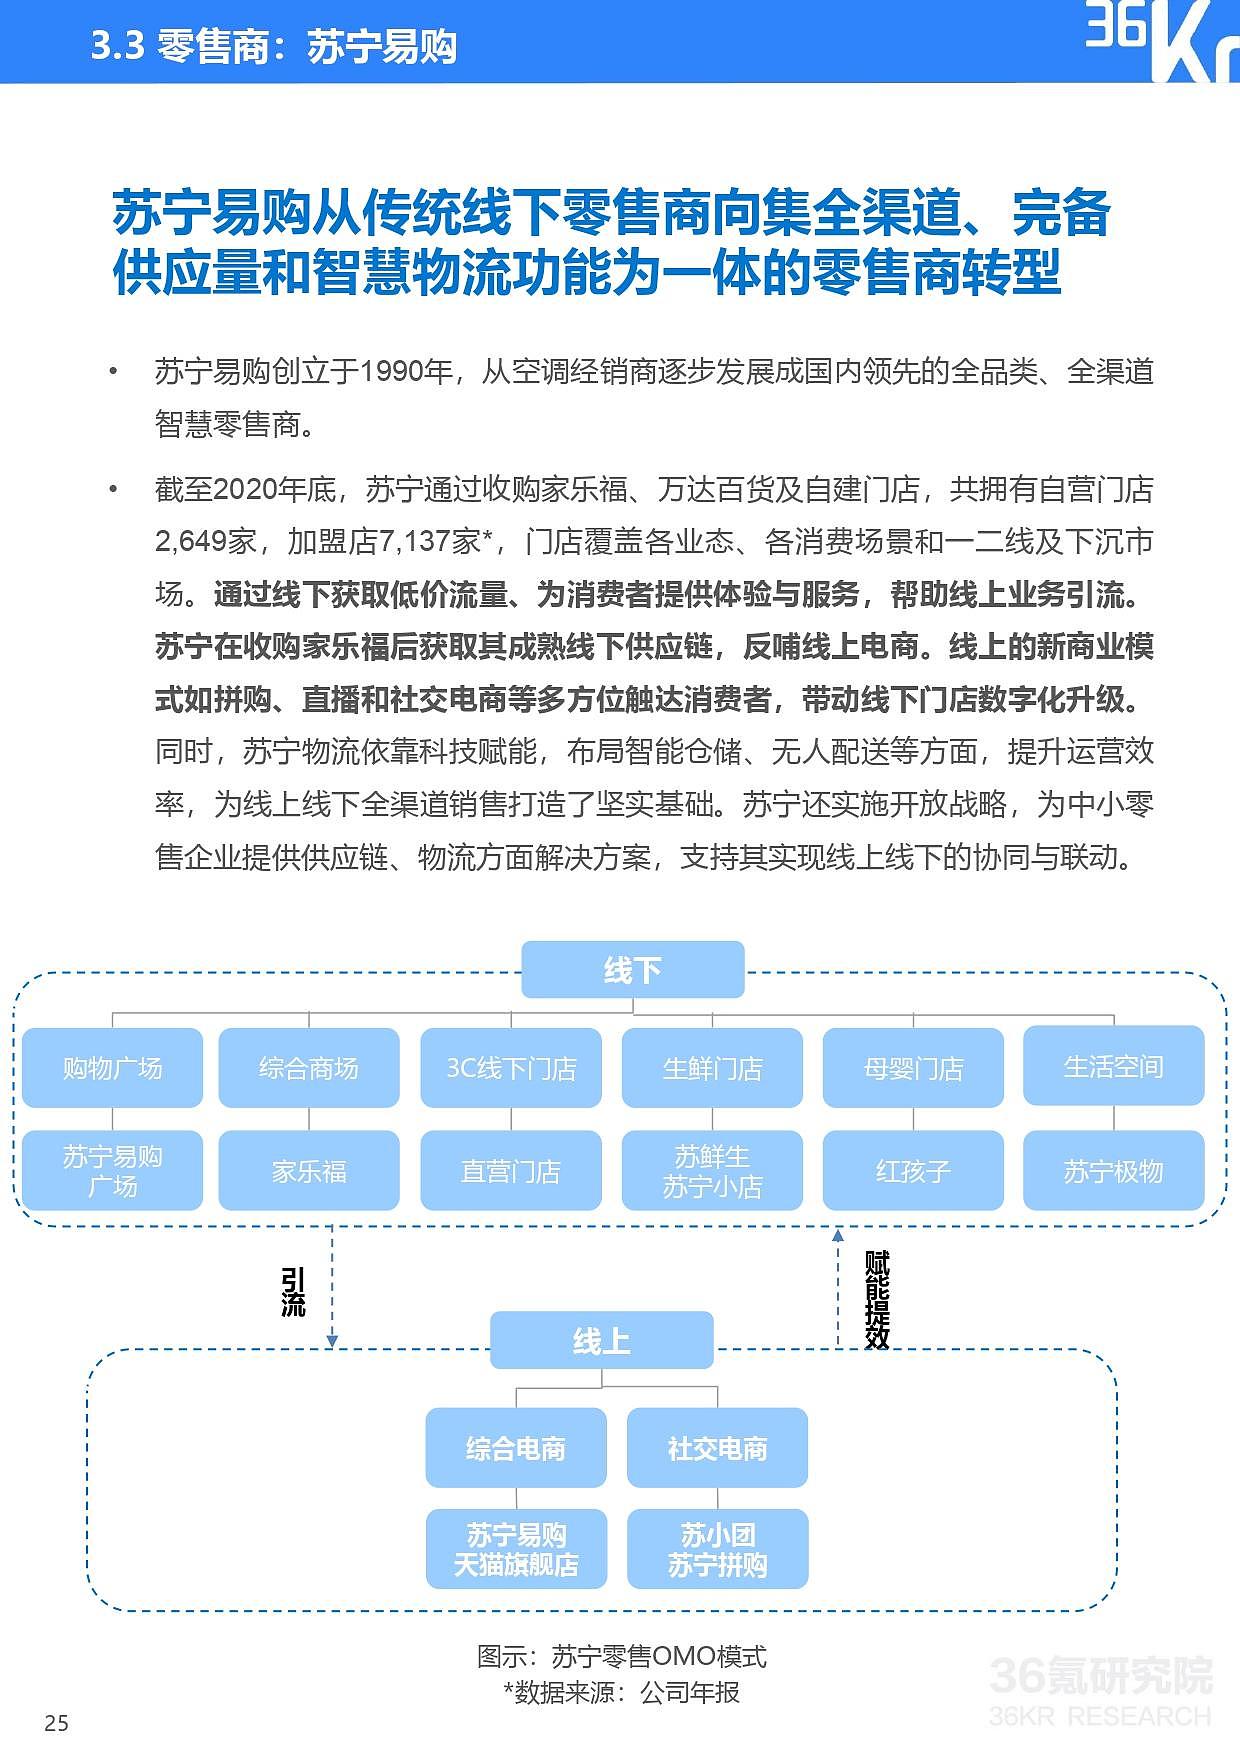 36氪研究院 | 2021年中国零售OMO研究报告 - 26